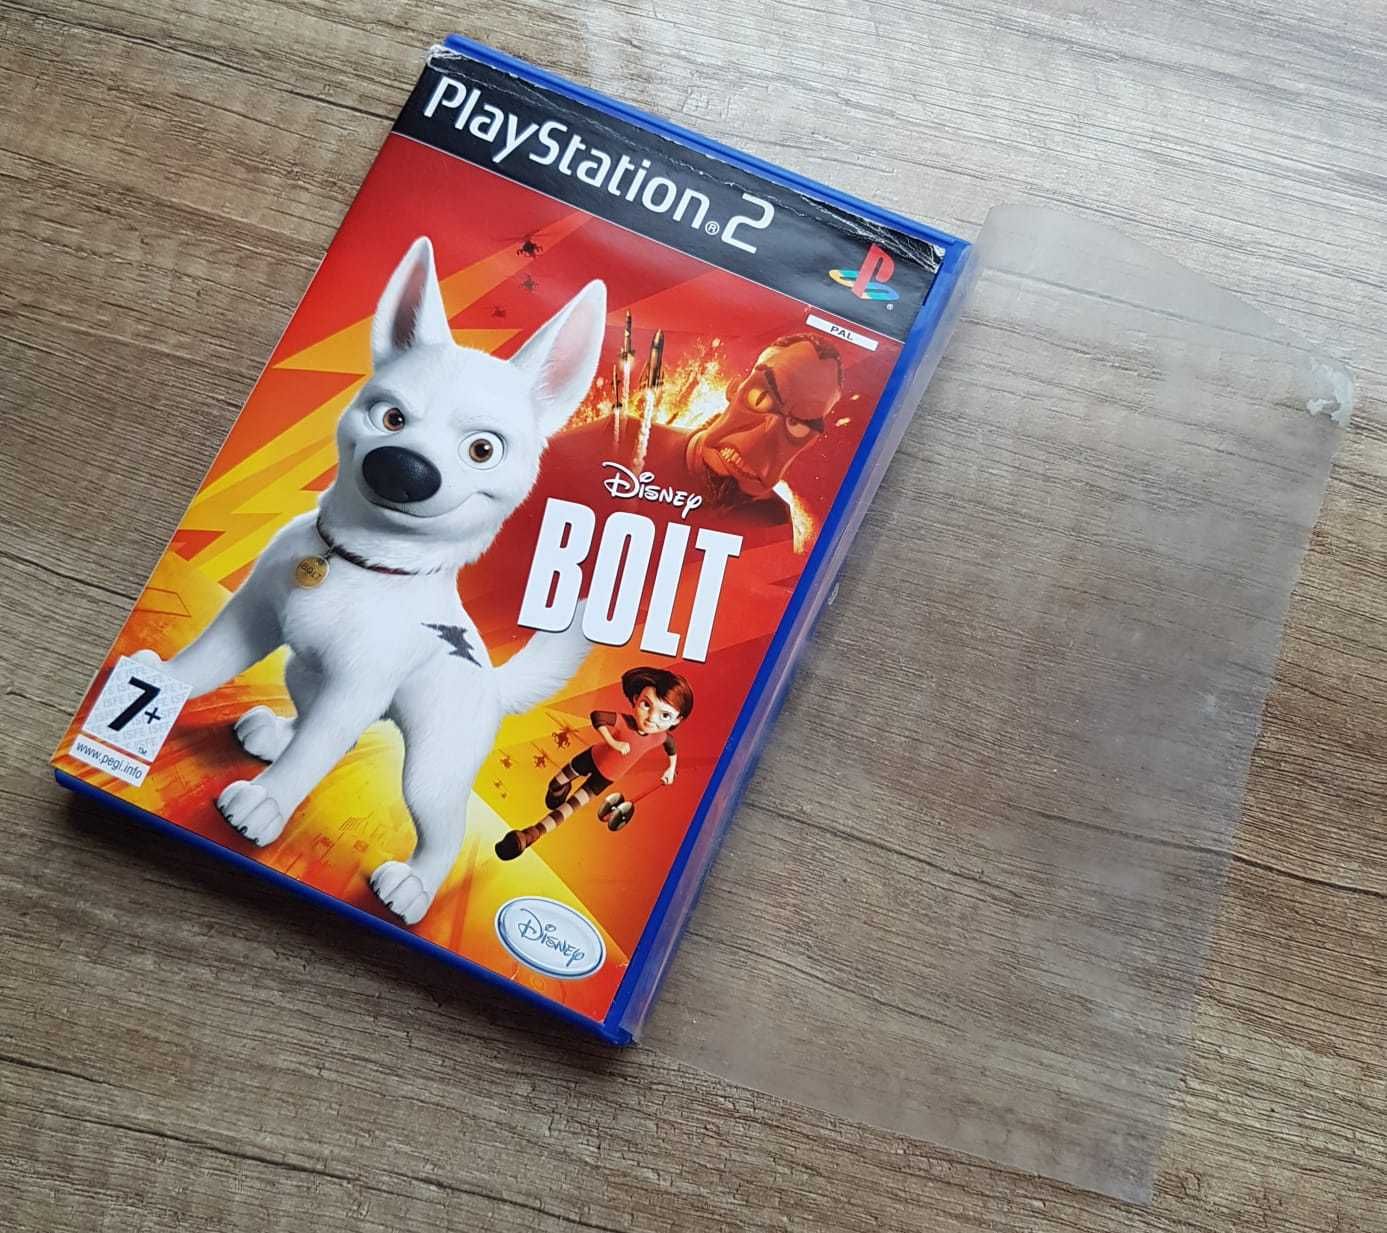 Disney Bolt Playstation 2 PS2